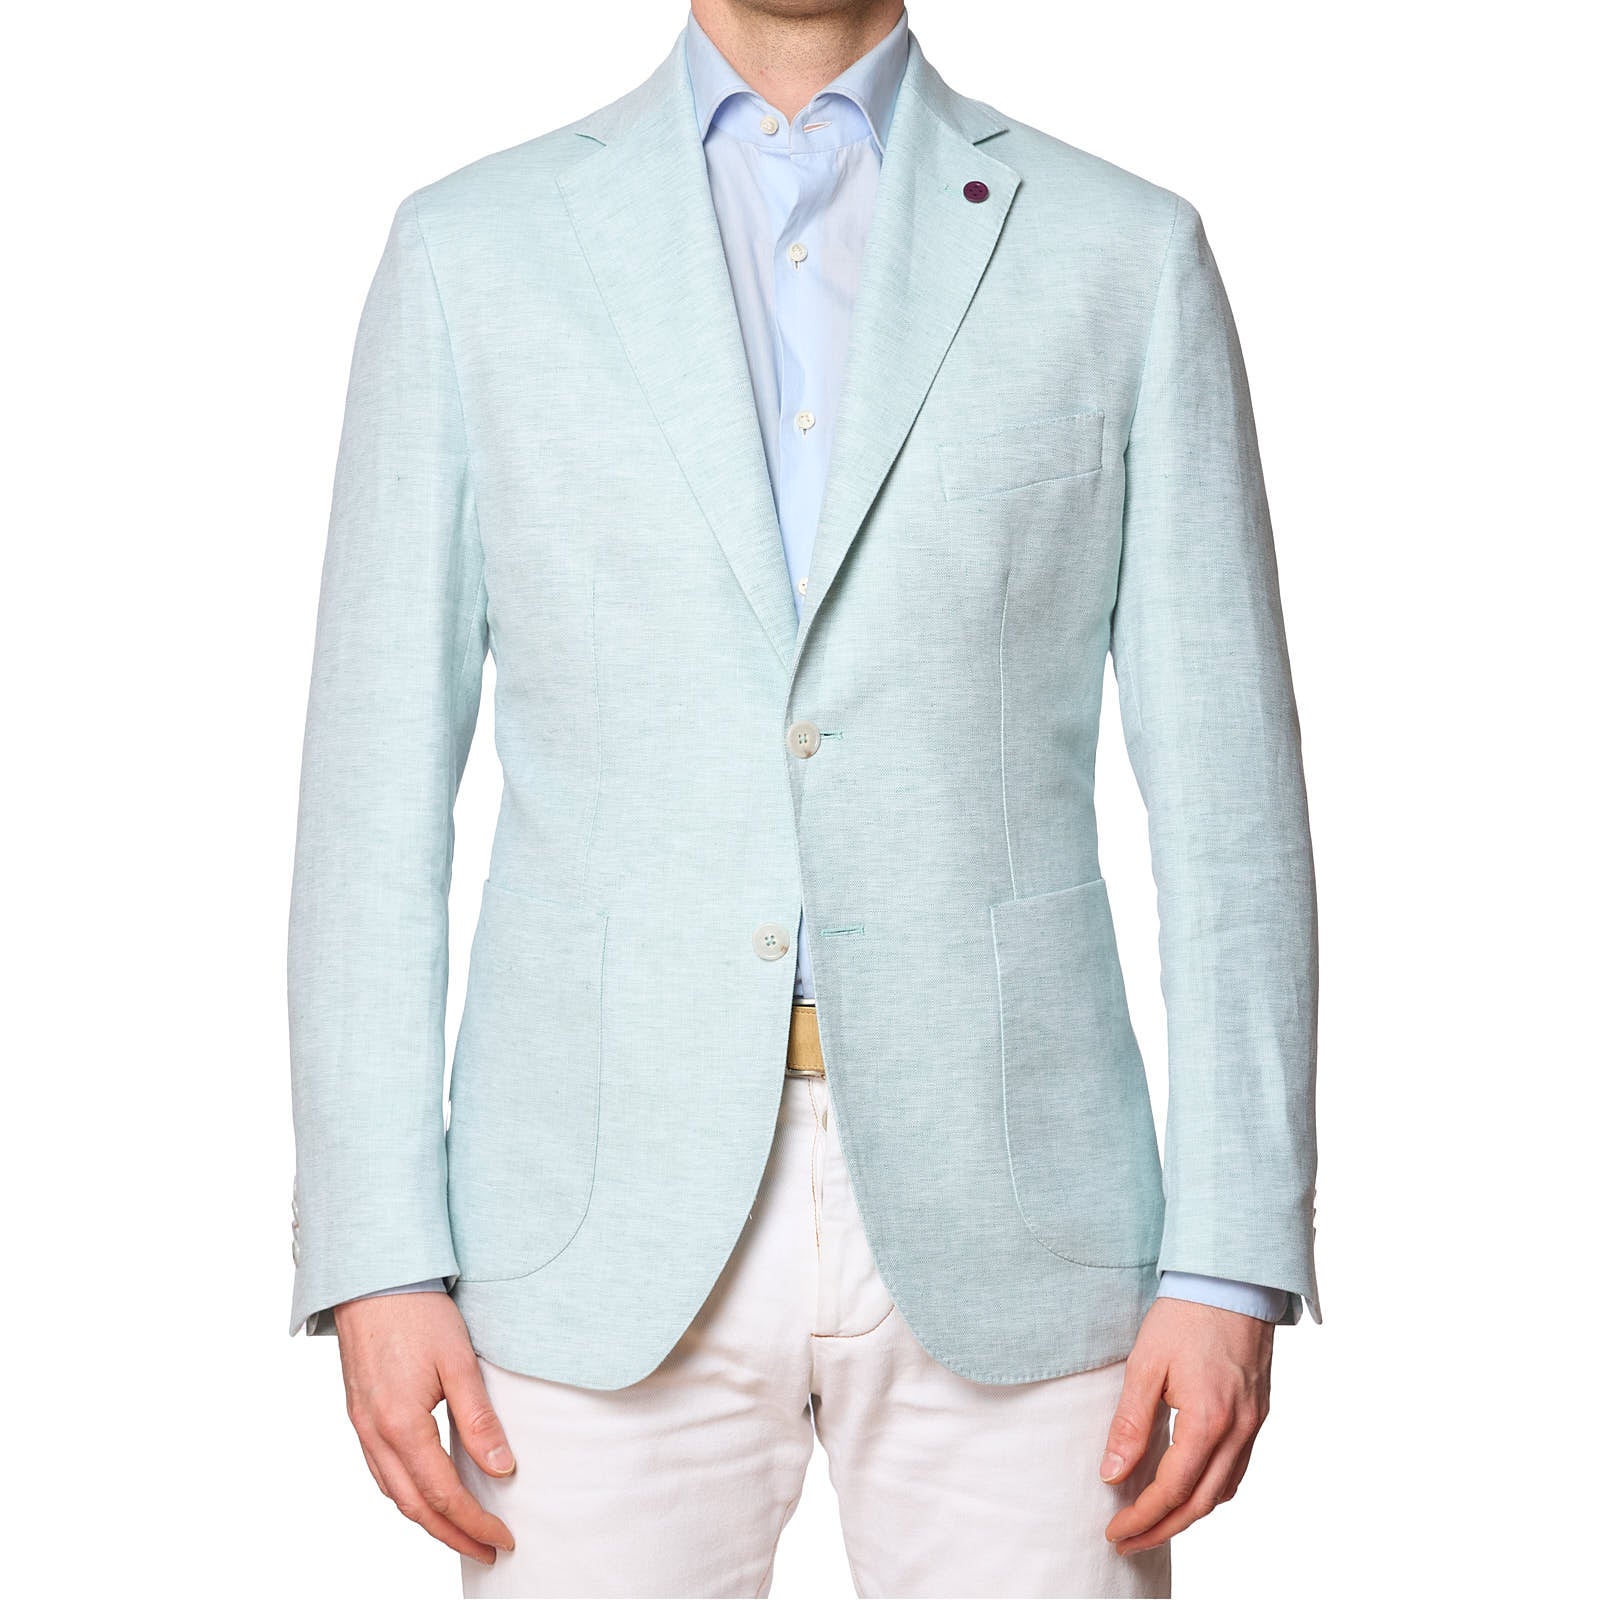 SARTORIA PARTENOPEA Mint Color Cotton-Linen Unlined Jacket  NEW  Current Model